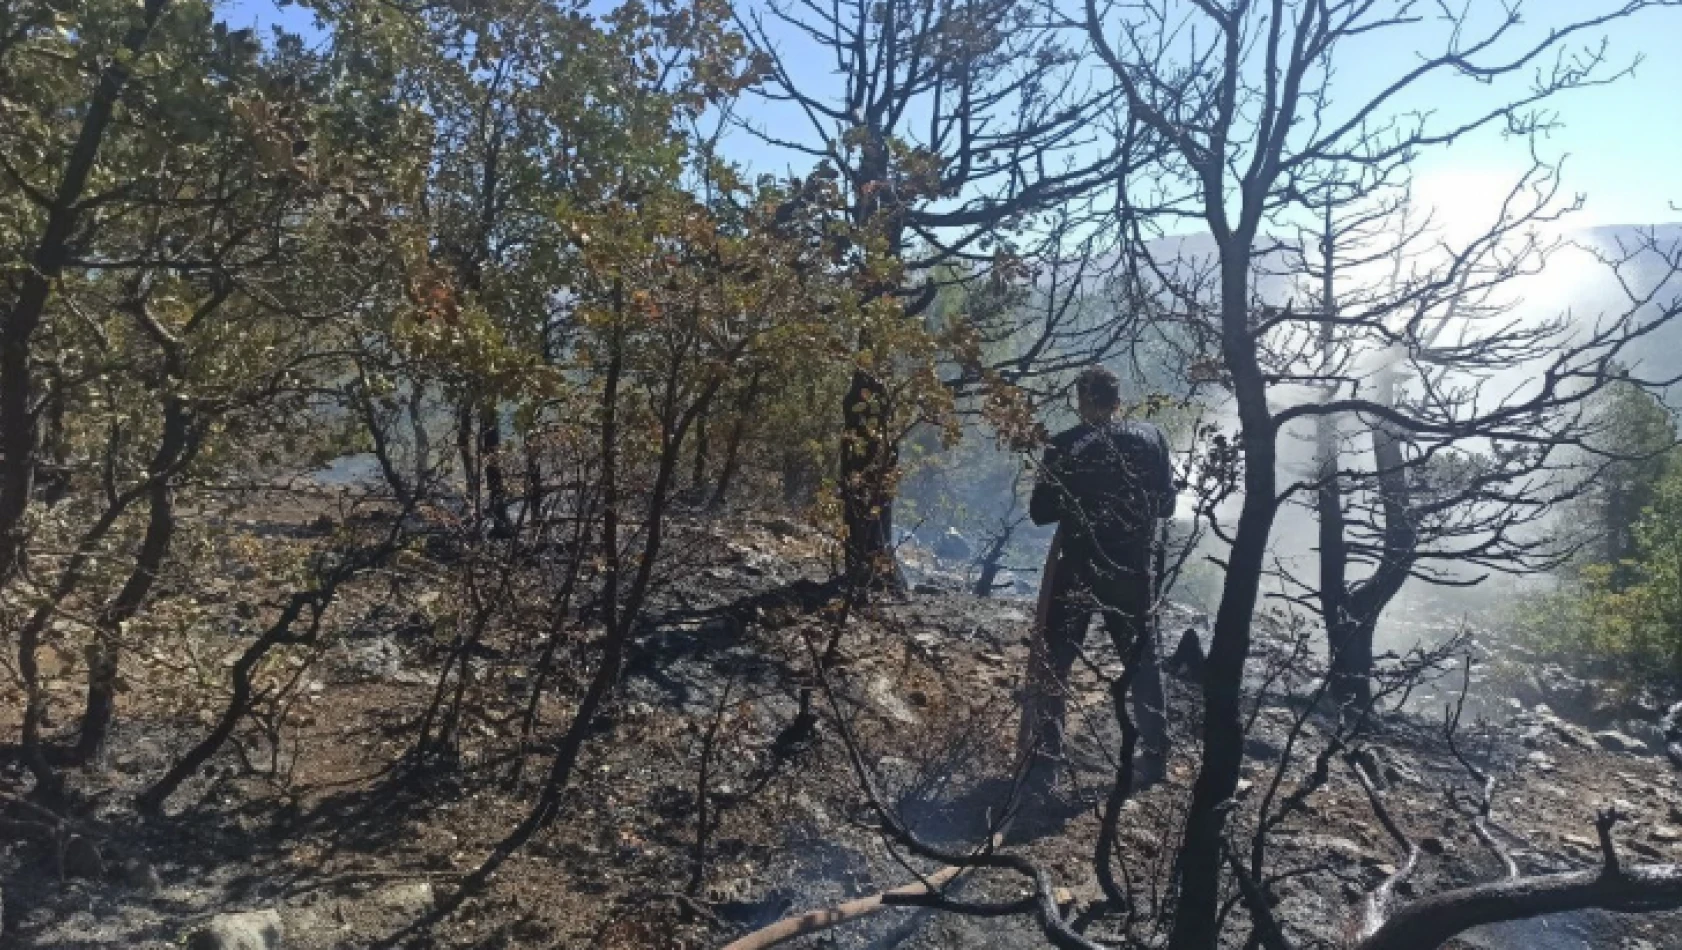 Adıyaman'daki orman yangını tamamen söndürüldü